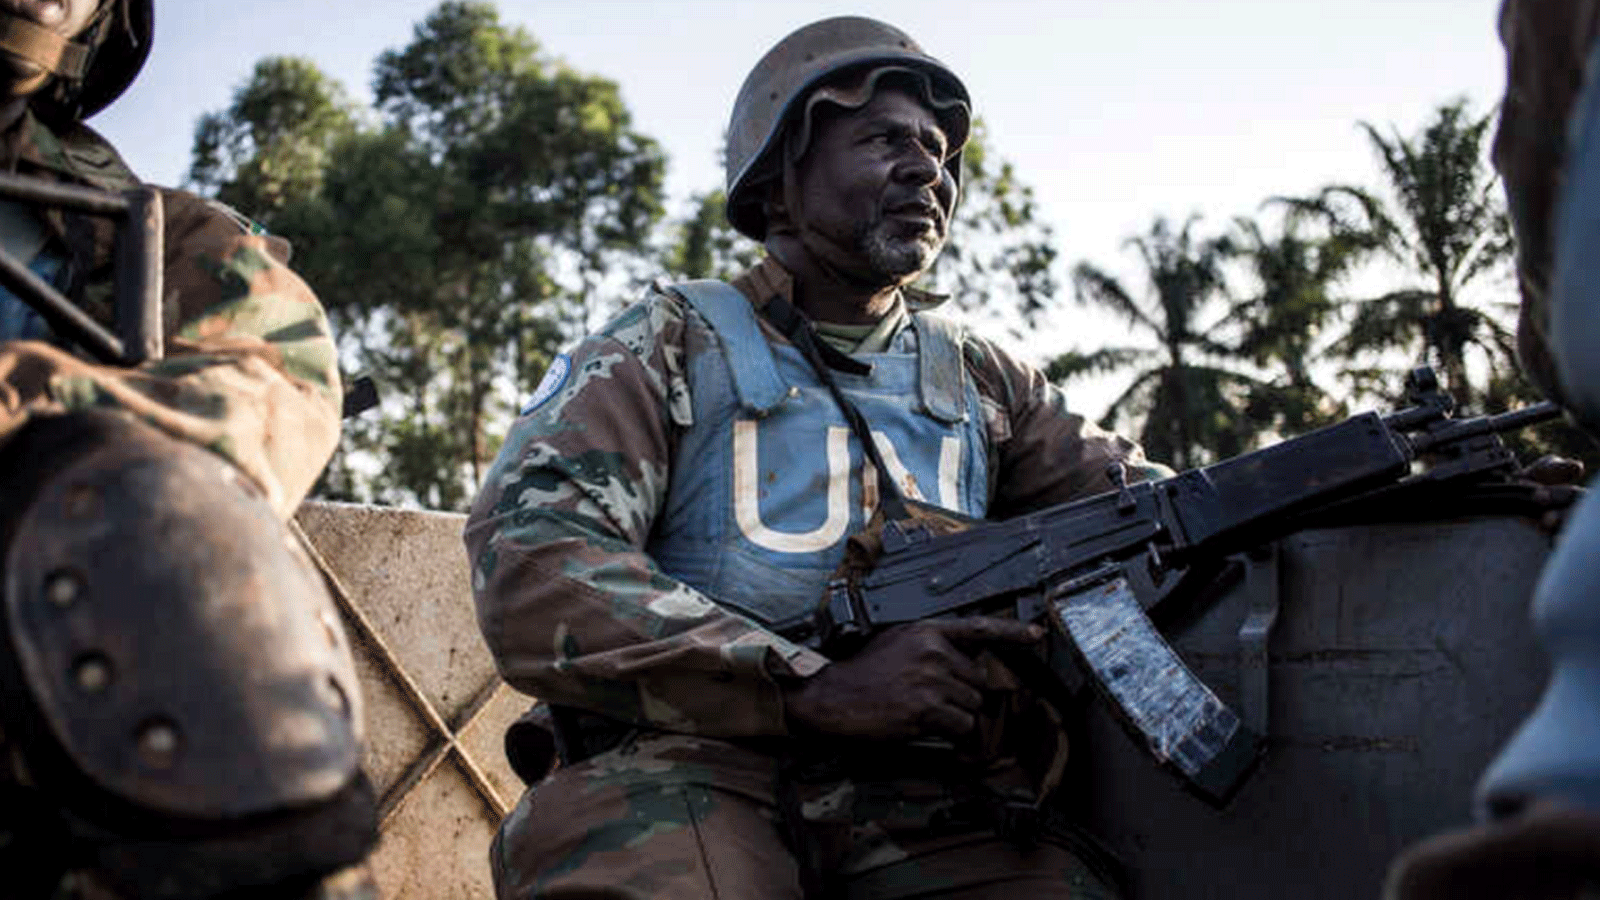 جندي جنوب أفريقي من بعثة الأمم المتحدة في جمهورية الكونغو الديمقراطية خلال دورية لصد هجمات متمردي القوات الديمقراطية المتحالفة في شمال شرق أويتشا، 8 تشرين الأول/أكتوبر 2018.